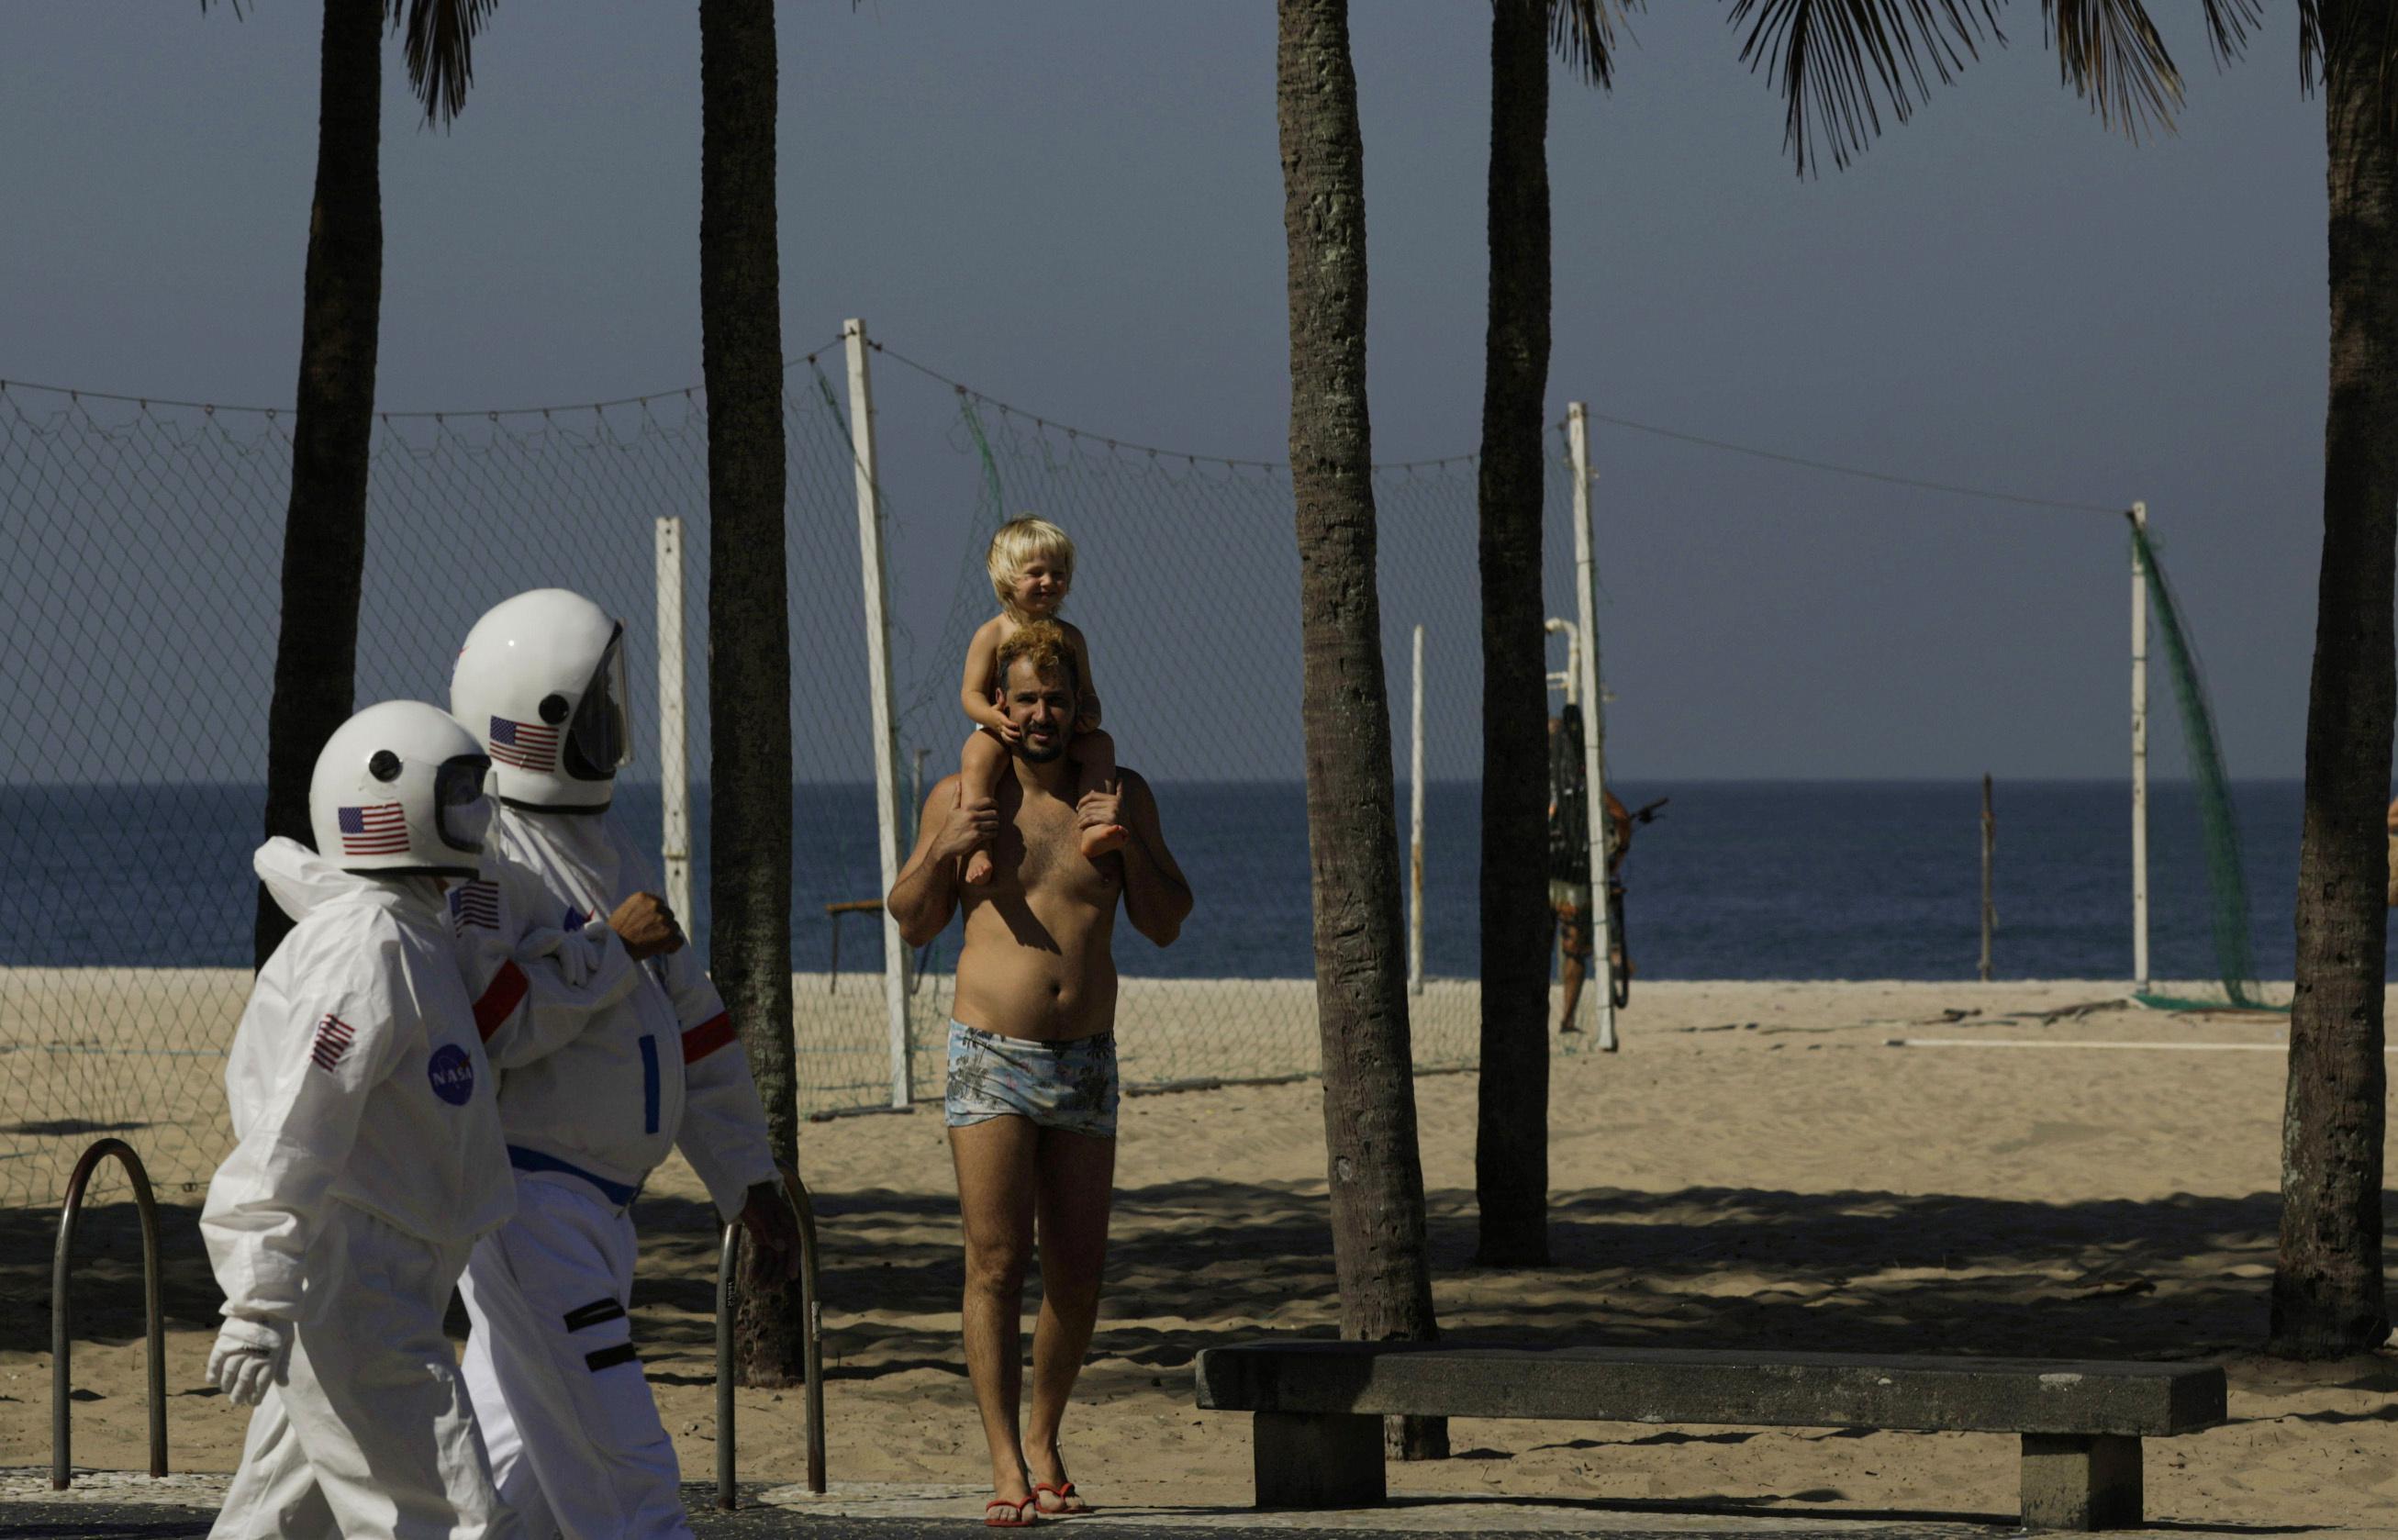 Coronadan korunmak isteyen çift astronot kıyafetiyle plaja indi